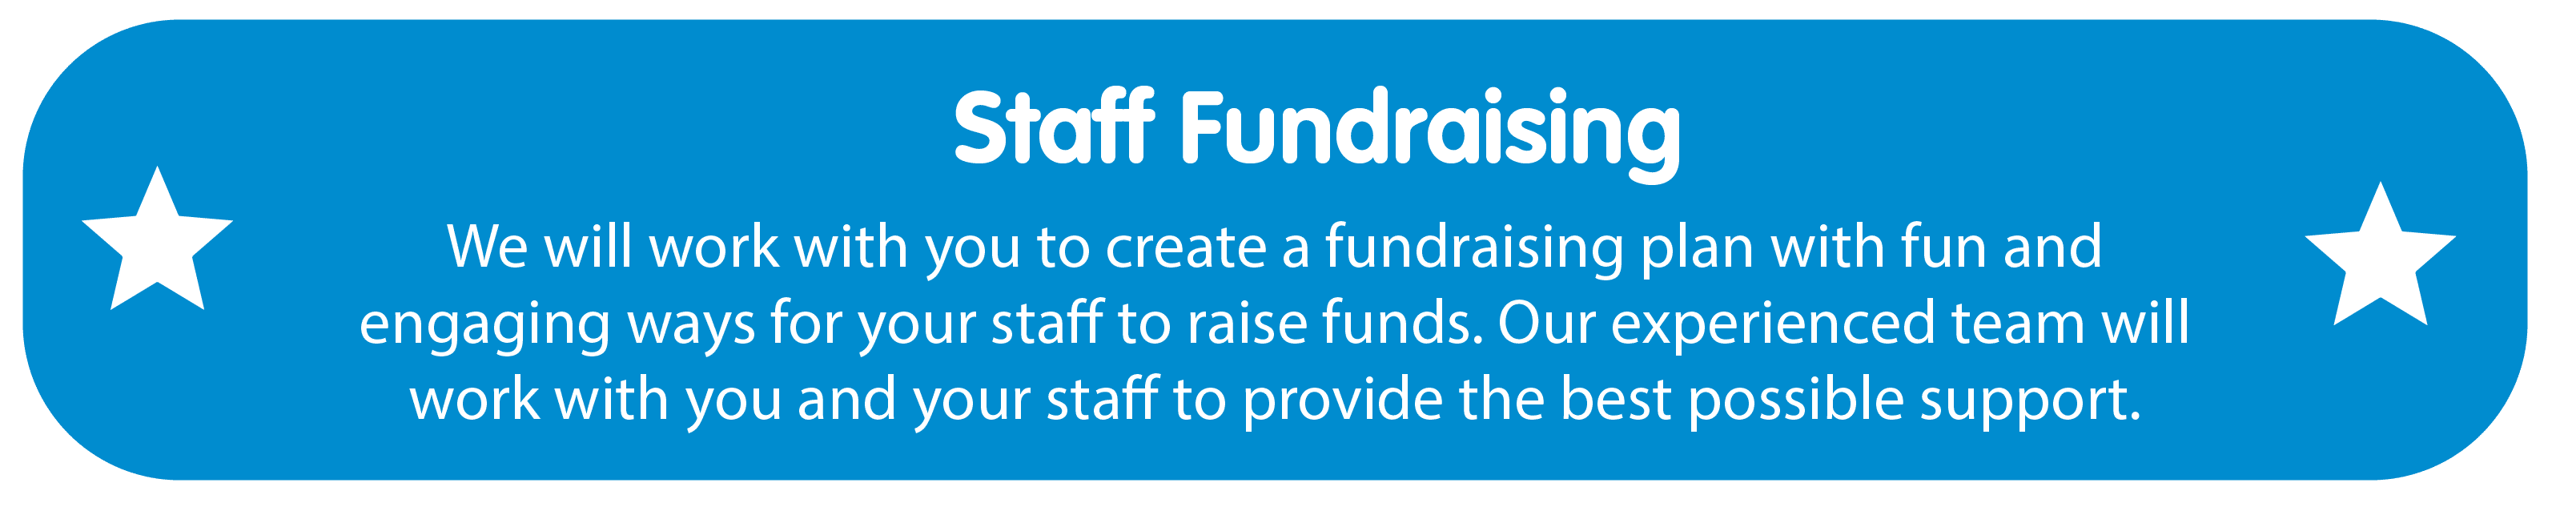 Staff fundraising